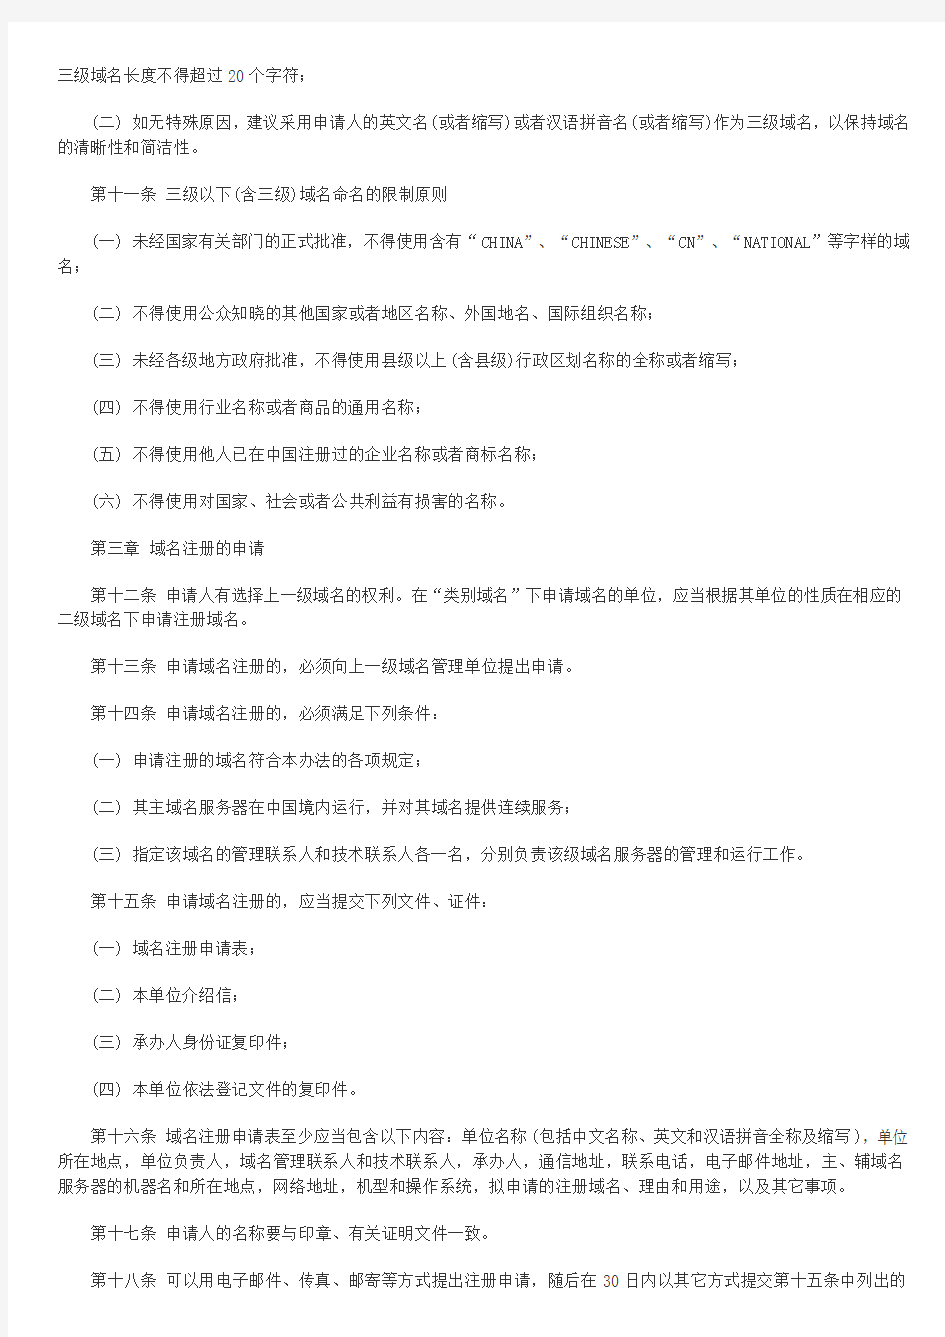 中国互联网络域名注册暂行管理办法(1997年6月3日)